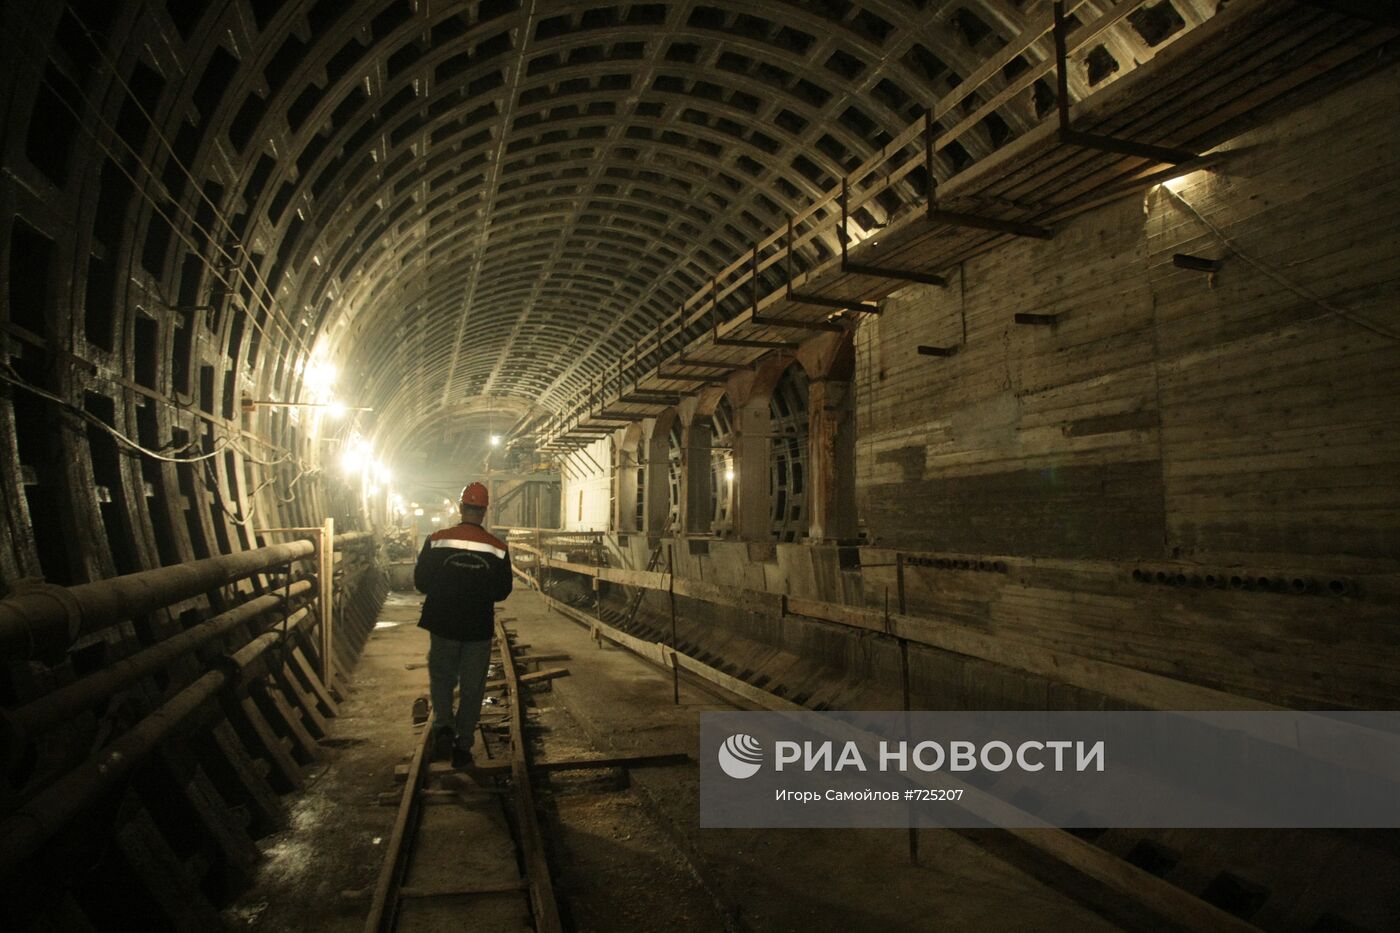 Строительство станции метро "Международная" в Санкт-Петербурге